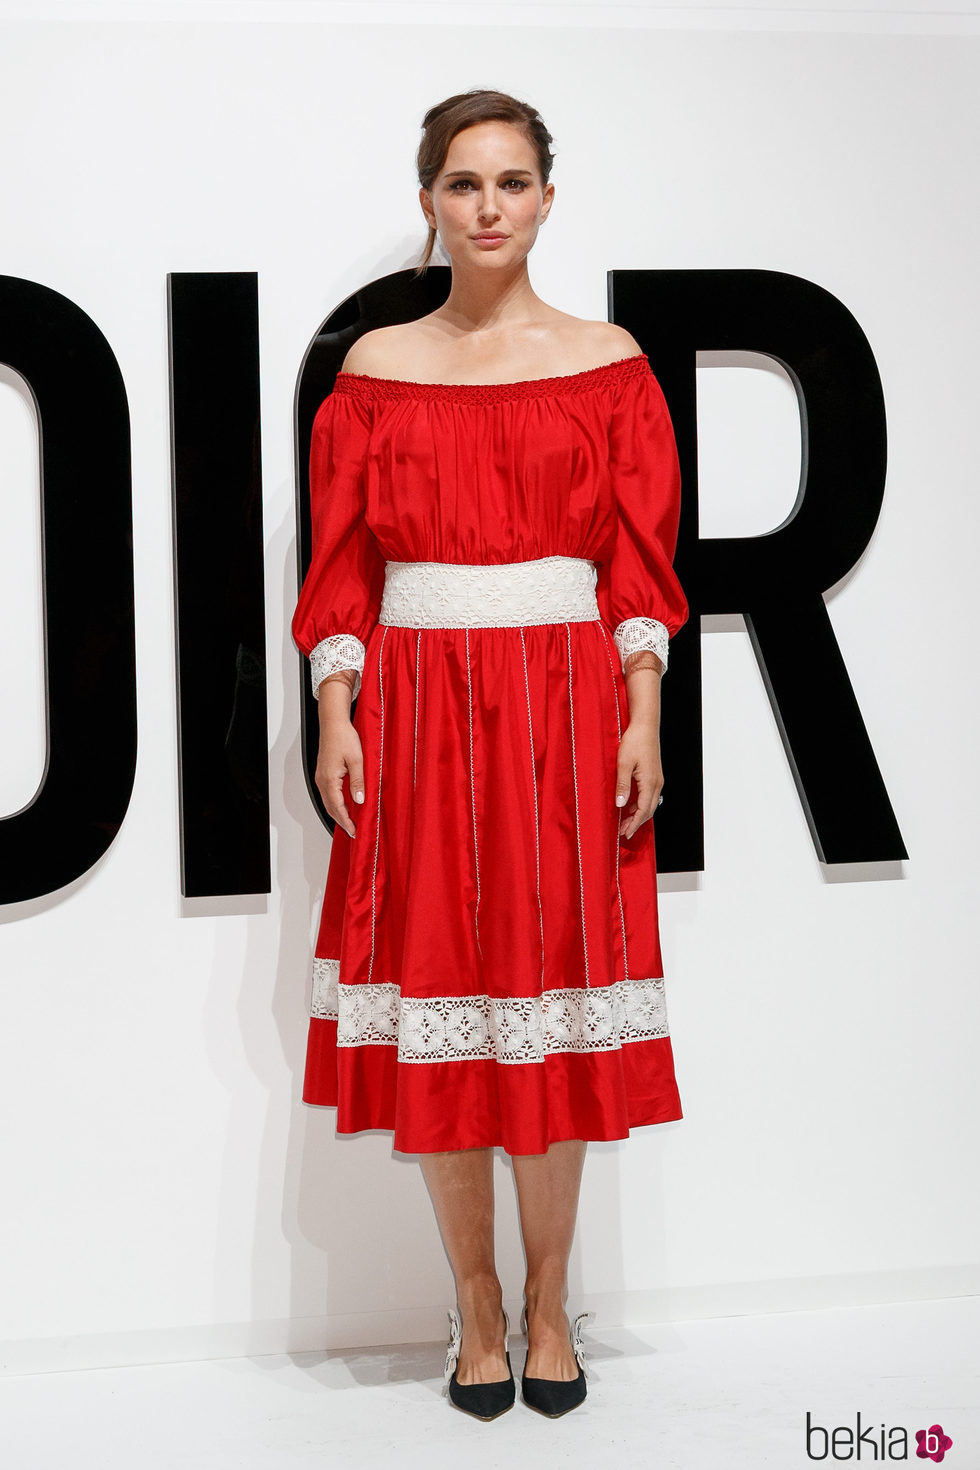 Natalie Portman con un vestido ibicenco rojo